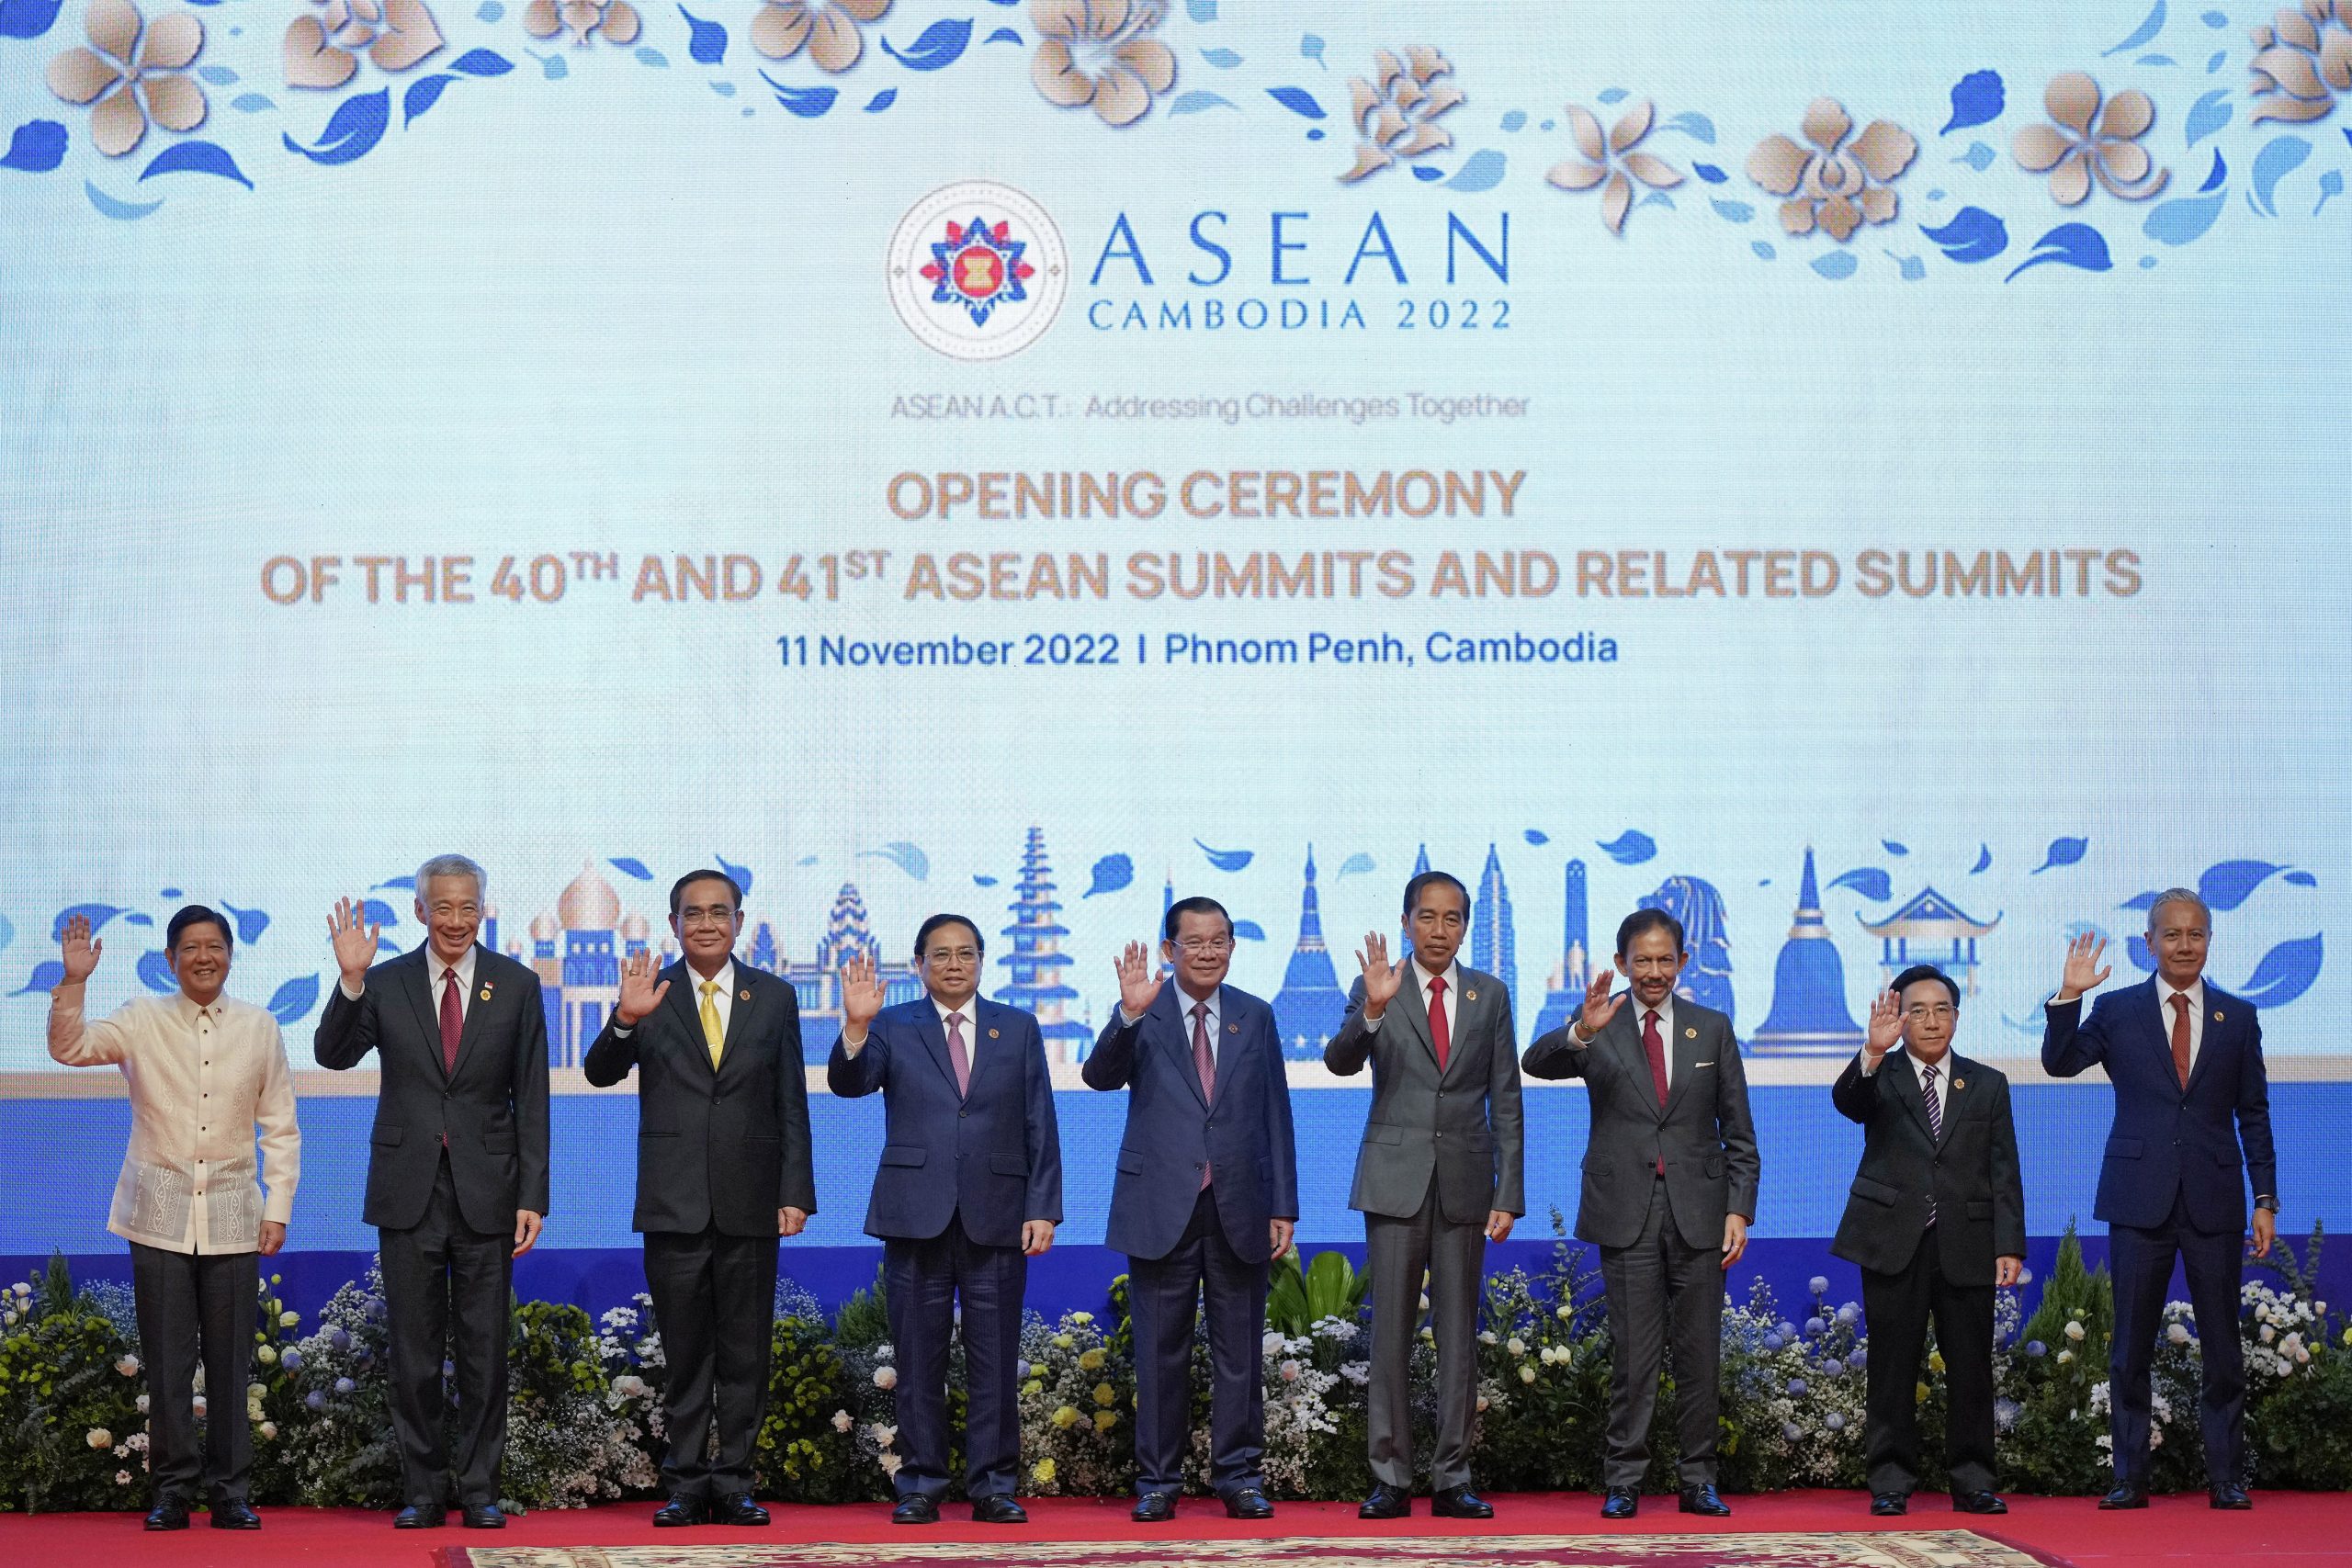 东盟全家福Cambodia ASEAN:Ferdinand Marcos, Jr., Lee Hsien Loong, Prayuth Chan-ocha, Pham Minh Chinh, Hun Sen, Joko Widodo, Sultan Hassanal Bolkiah, Phankham Viphavanh, Azhar Azizan Harun